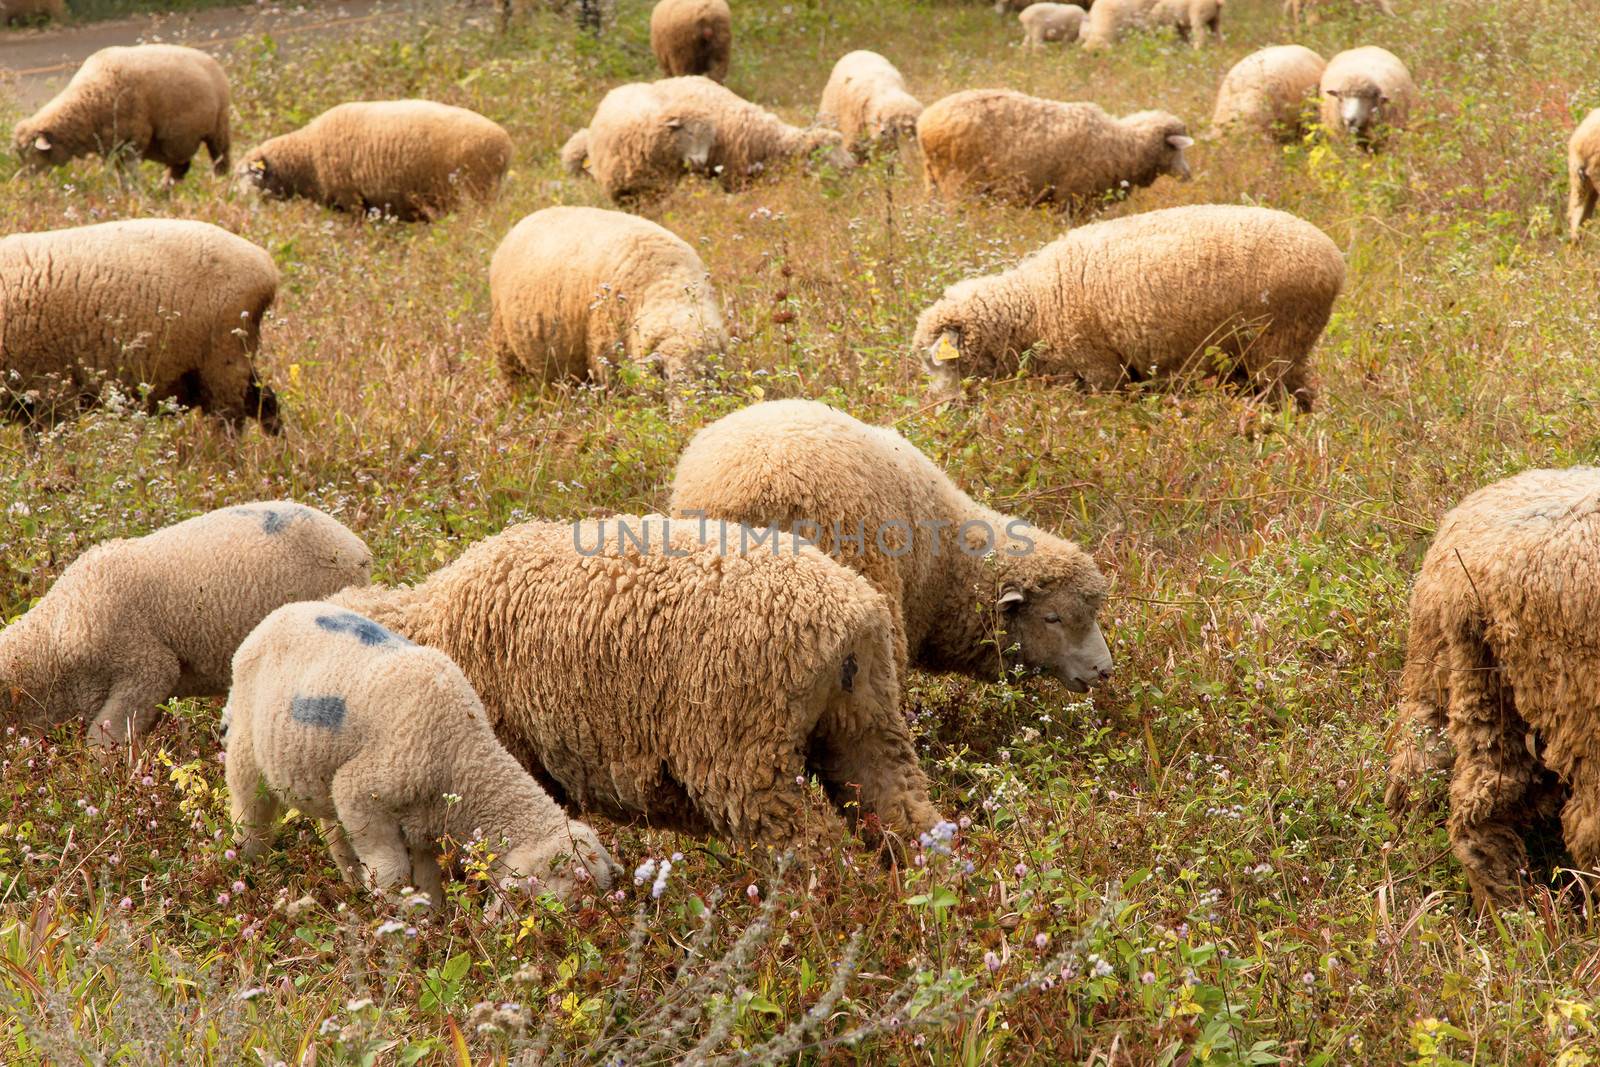 Lambs grazing in a green field